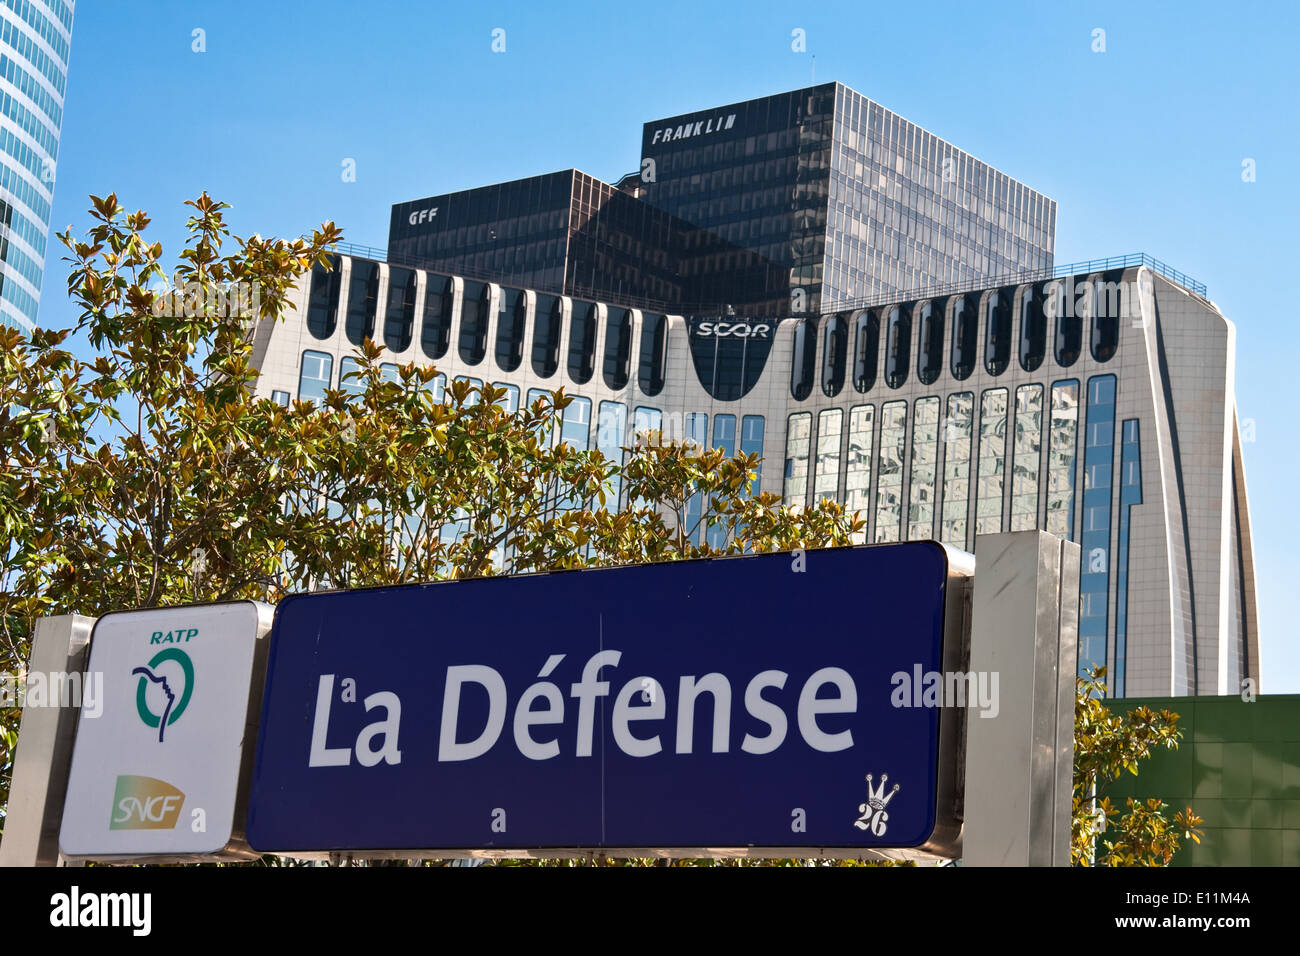 Hinweisschild in La Defense, Paris, Frankreich - Skyscrapers in La Defense, Paris, France Stock Photo